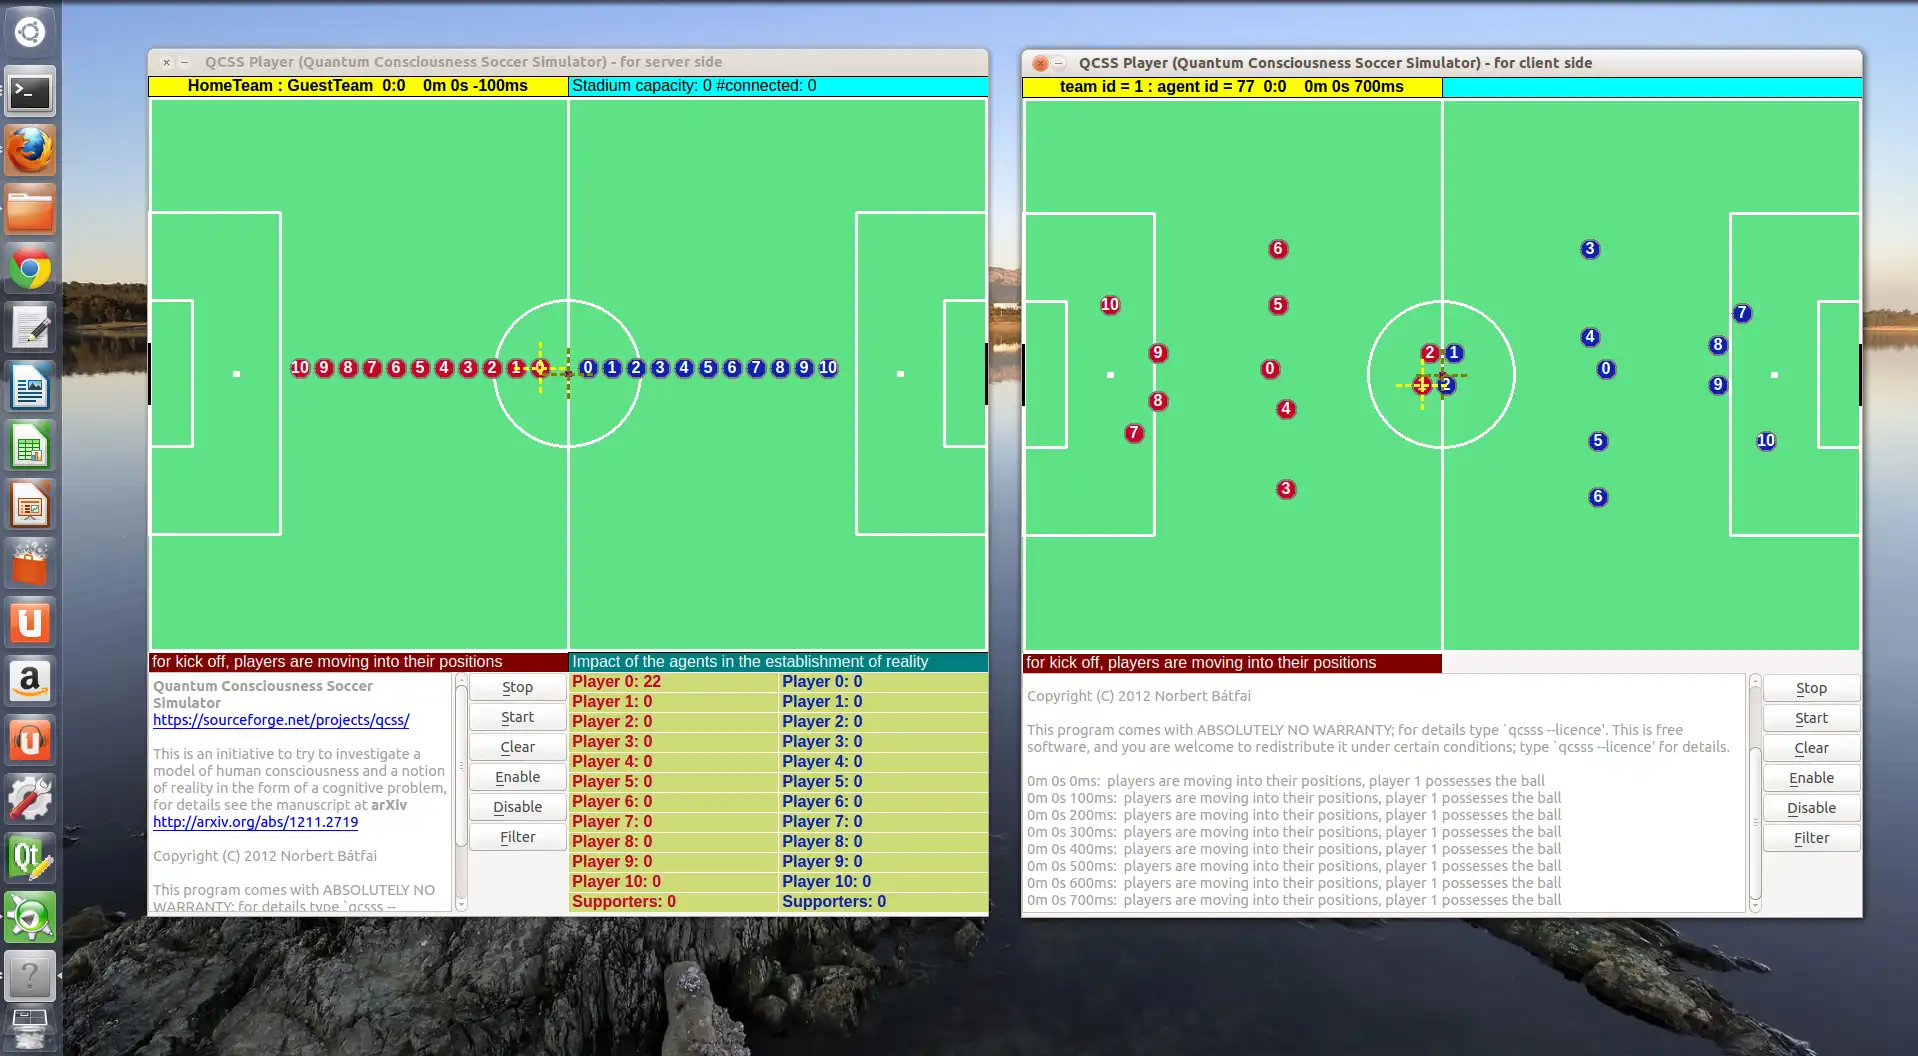 قم بتنزيل أداة الويب أو تطبيق الويب Quantum Consciousness Soccer Simulator للتشغيل في Linux عبر الإنترنت